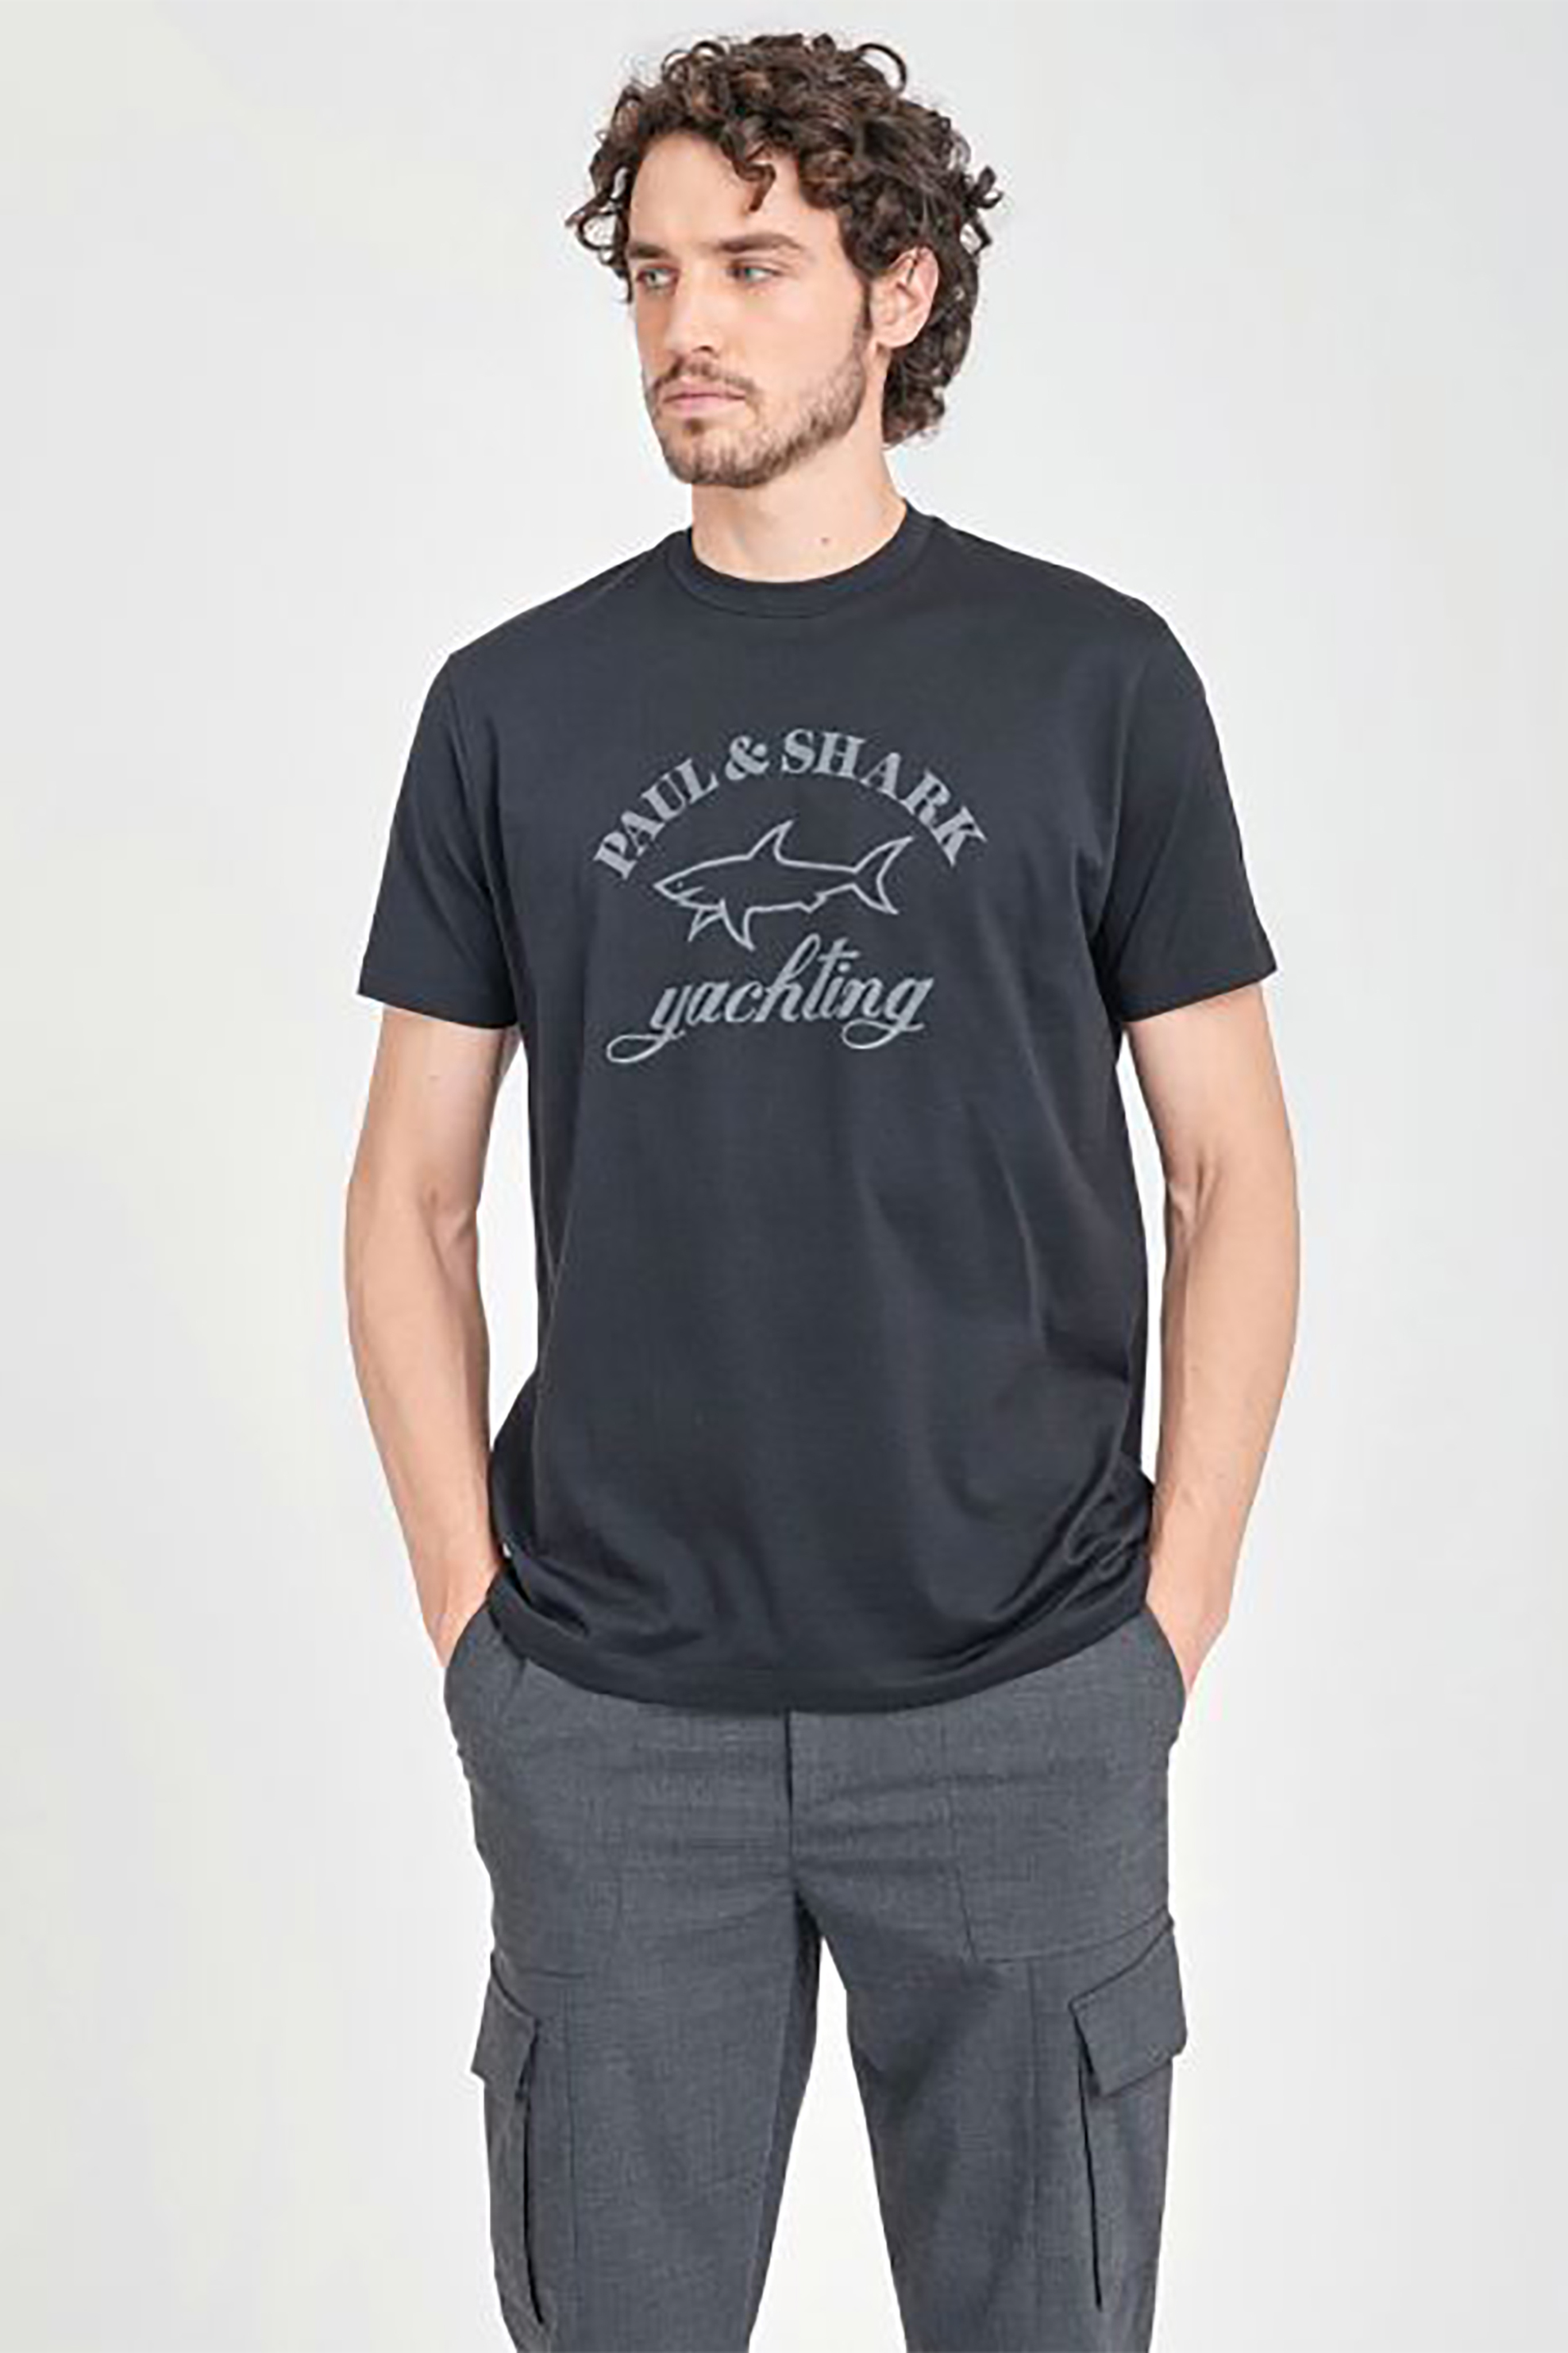 Άνδρας > ΡΟΥΧΑ > Μπλούζες > T-Shirts Paul&Shark ανδρικό T-shirt με logo print και στρογγυλή λαιμόκοψη - C0P1007 Μαύρο